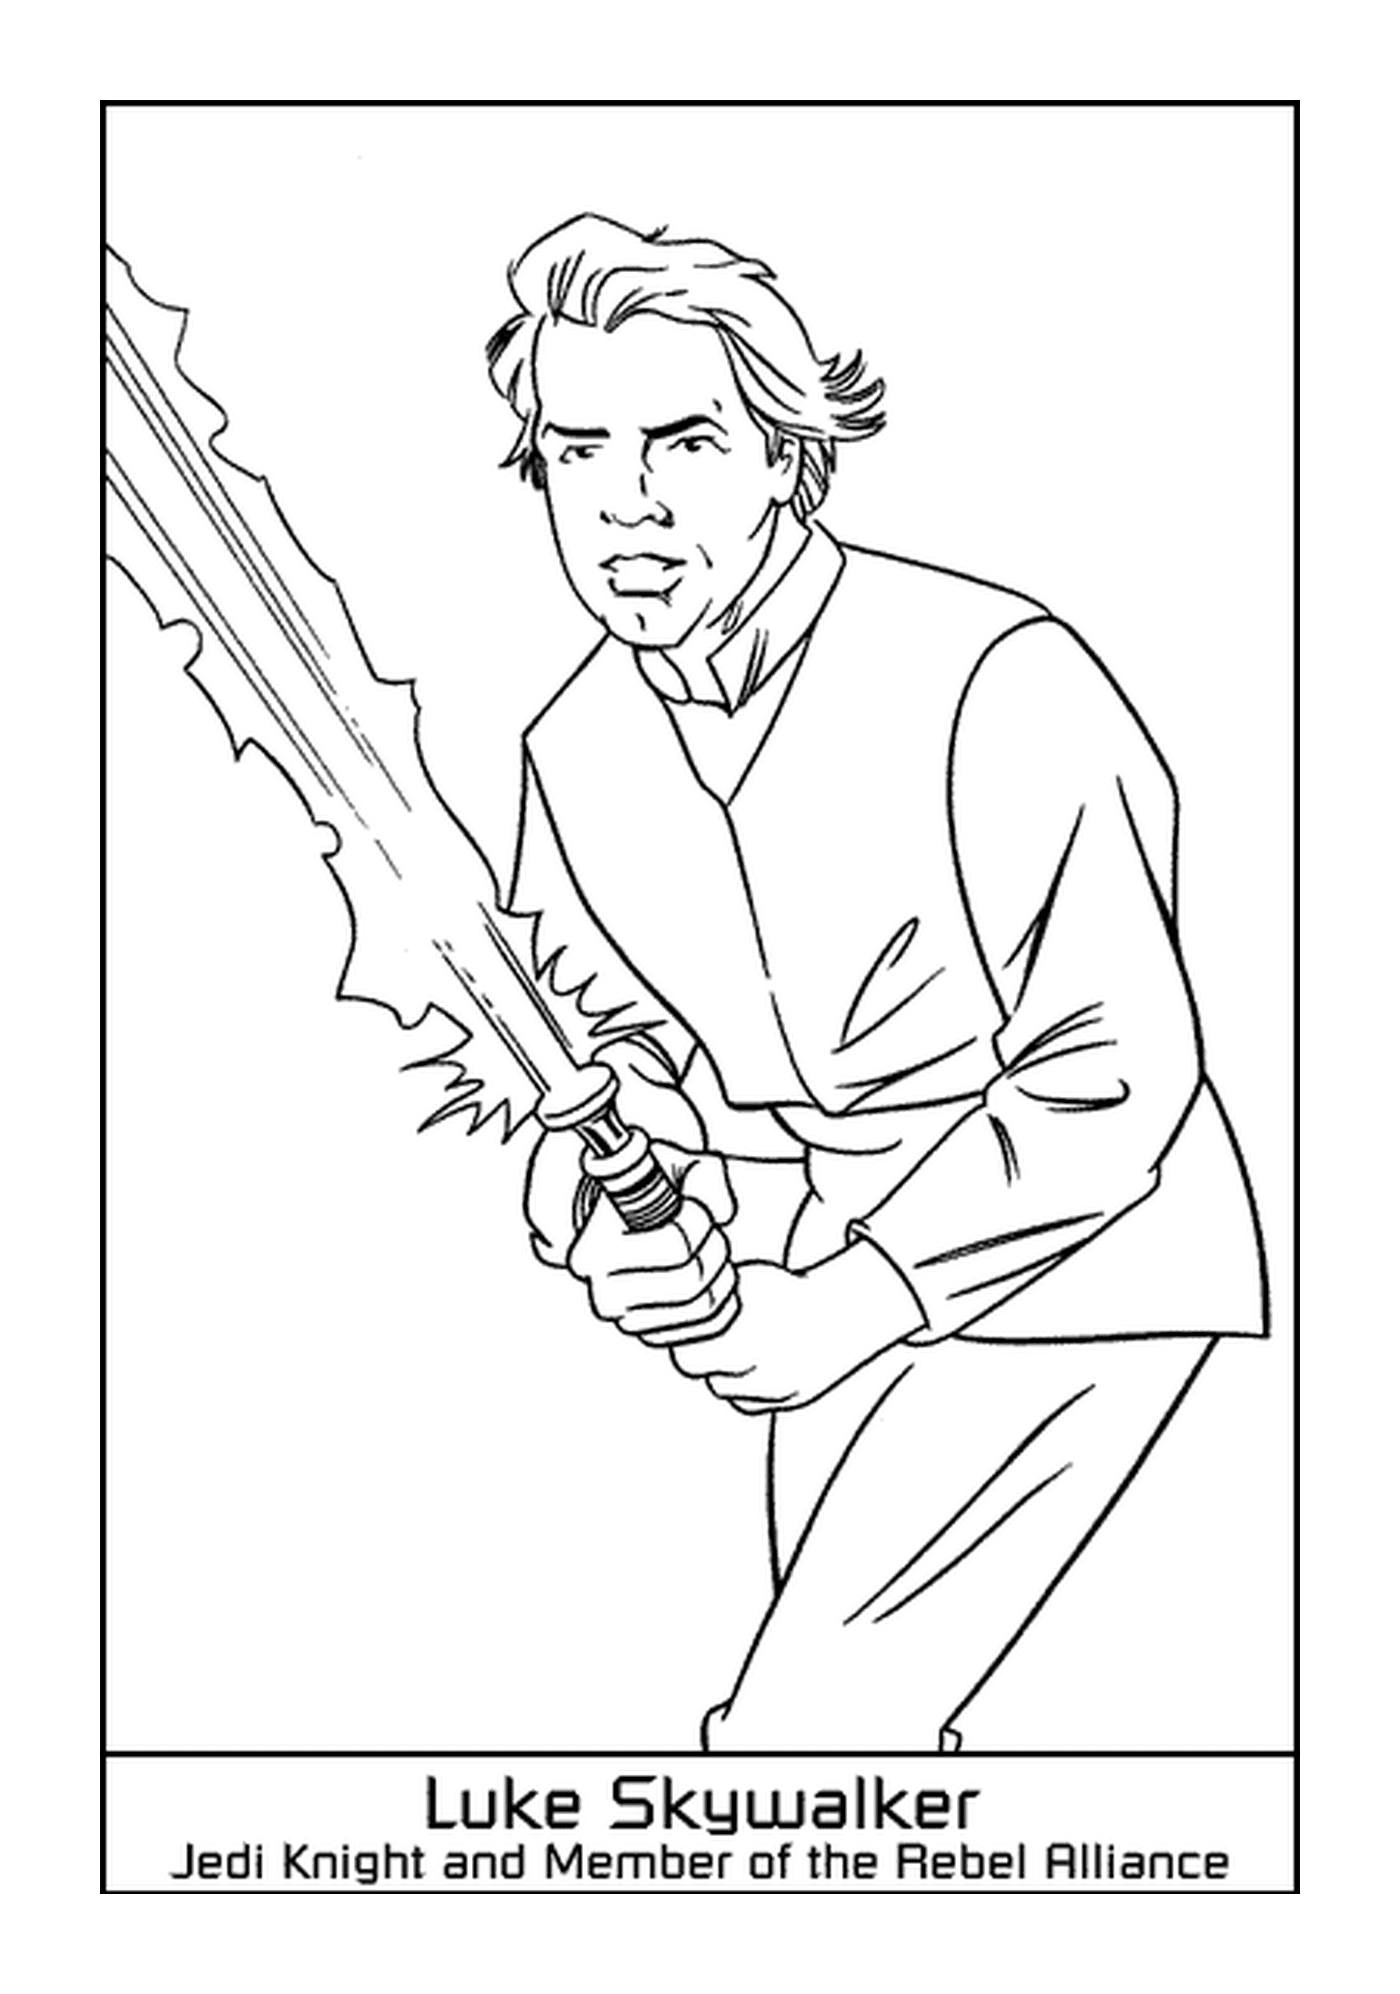  Luke Skywalker, the hero 